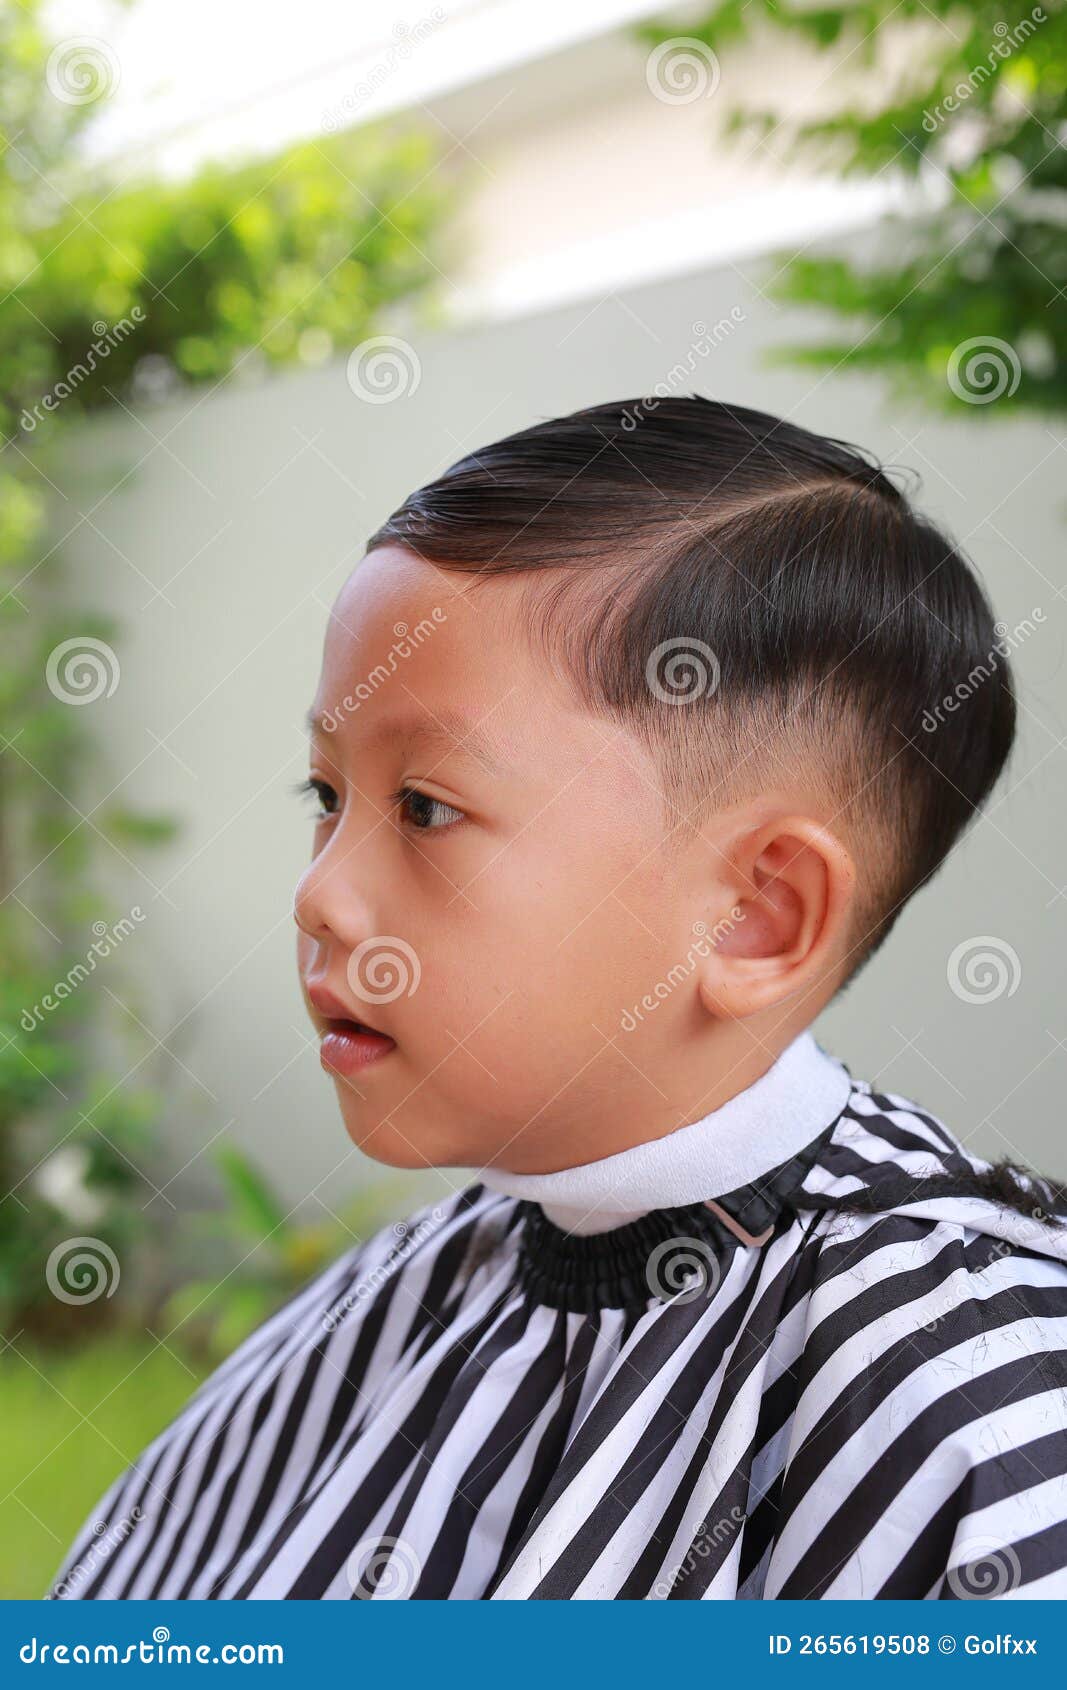 Feche o retrato do jovem modelo masculino asiático com cabelo